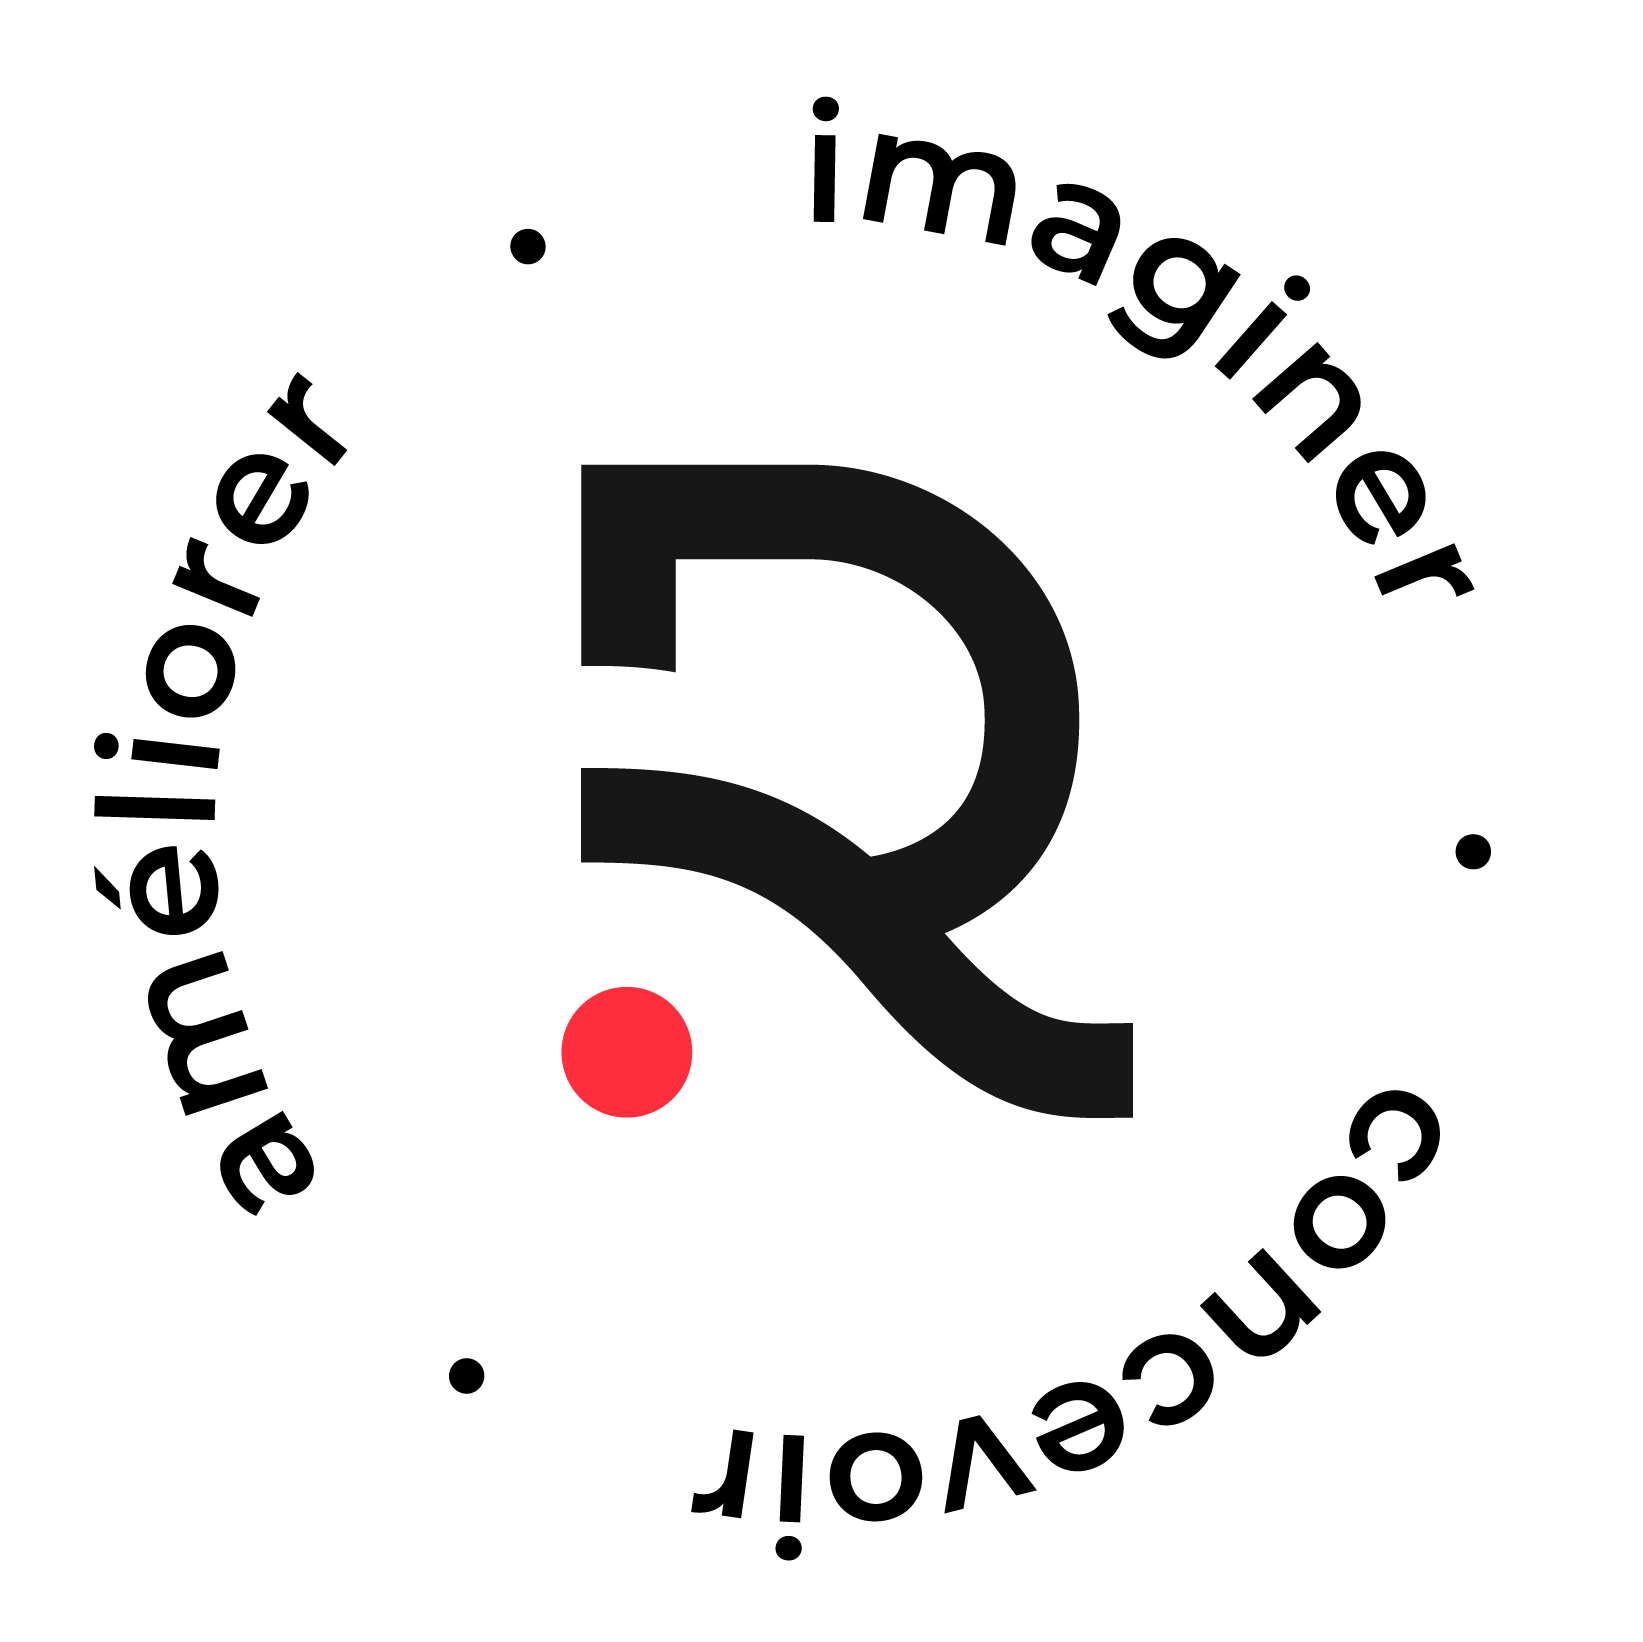 Agence Redwood - Agence conseil en communication digitale - Logo fond blanc ecriture noire point rouge